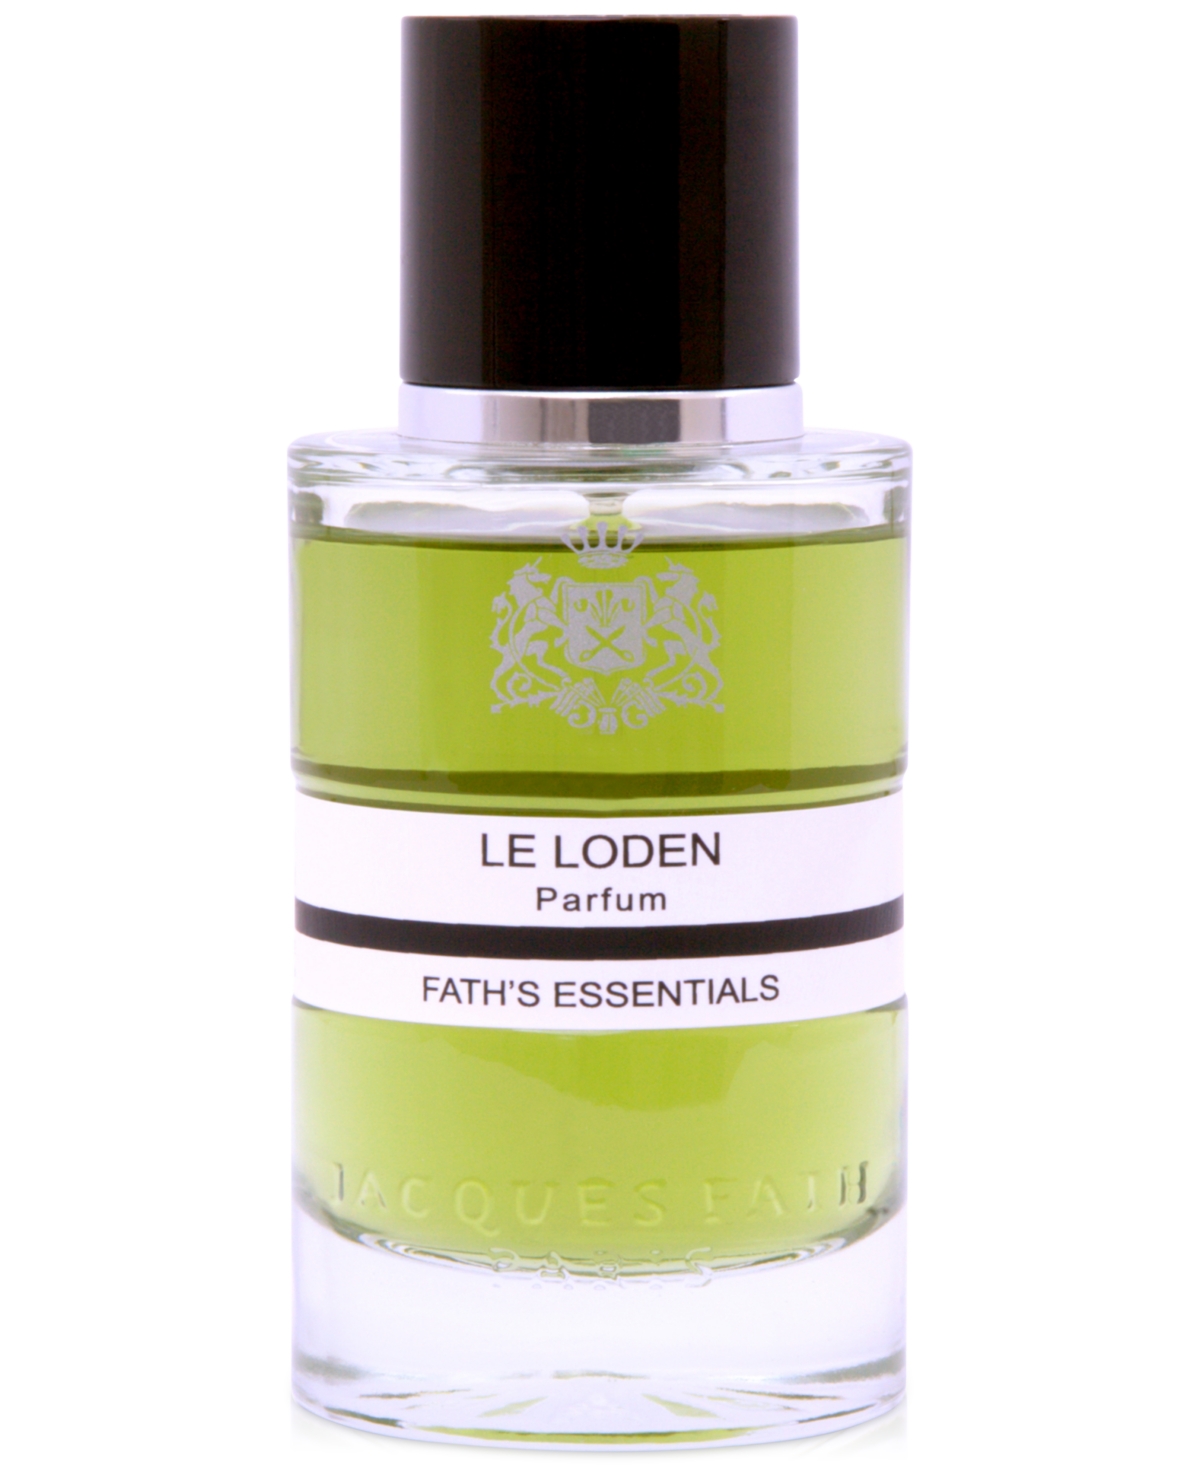 Le Loden Parfum, 3.4 oz.